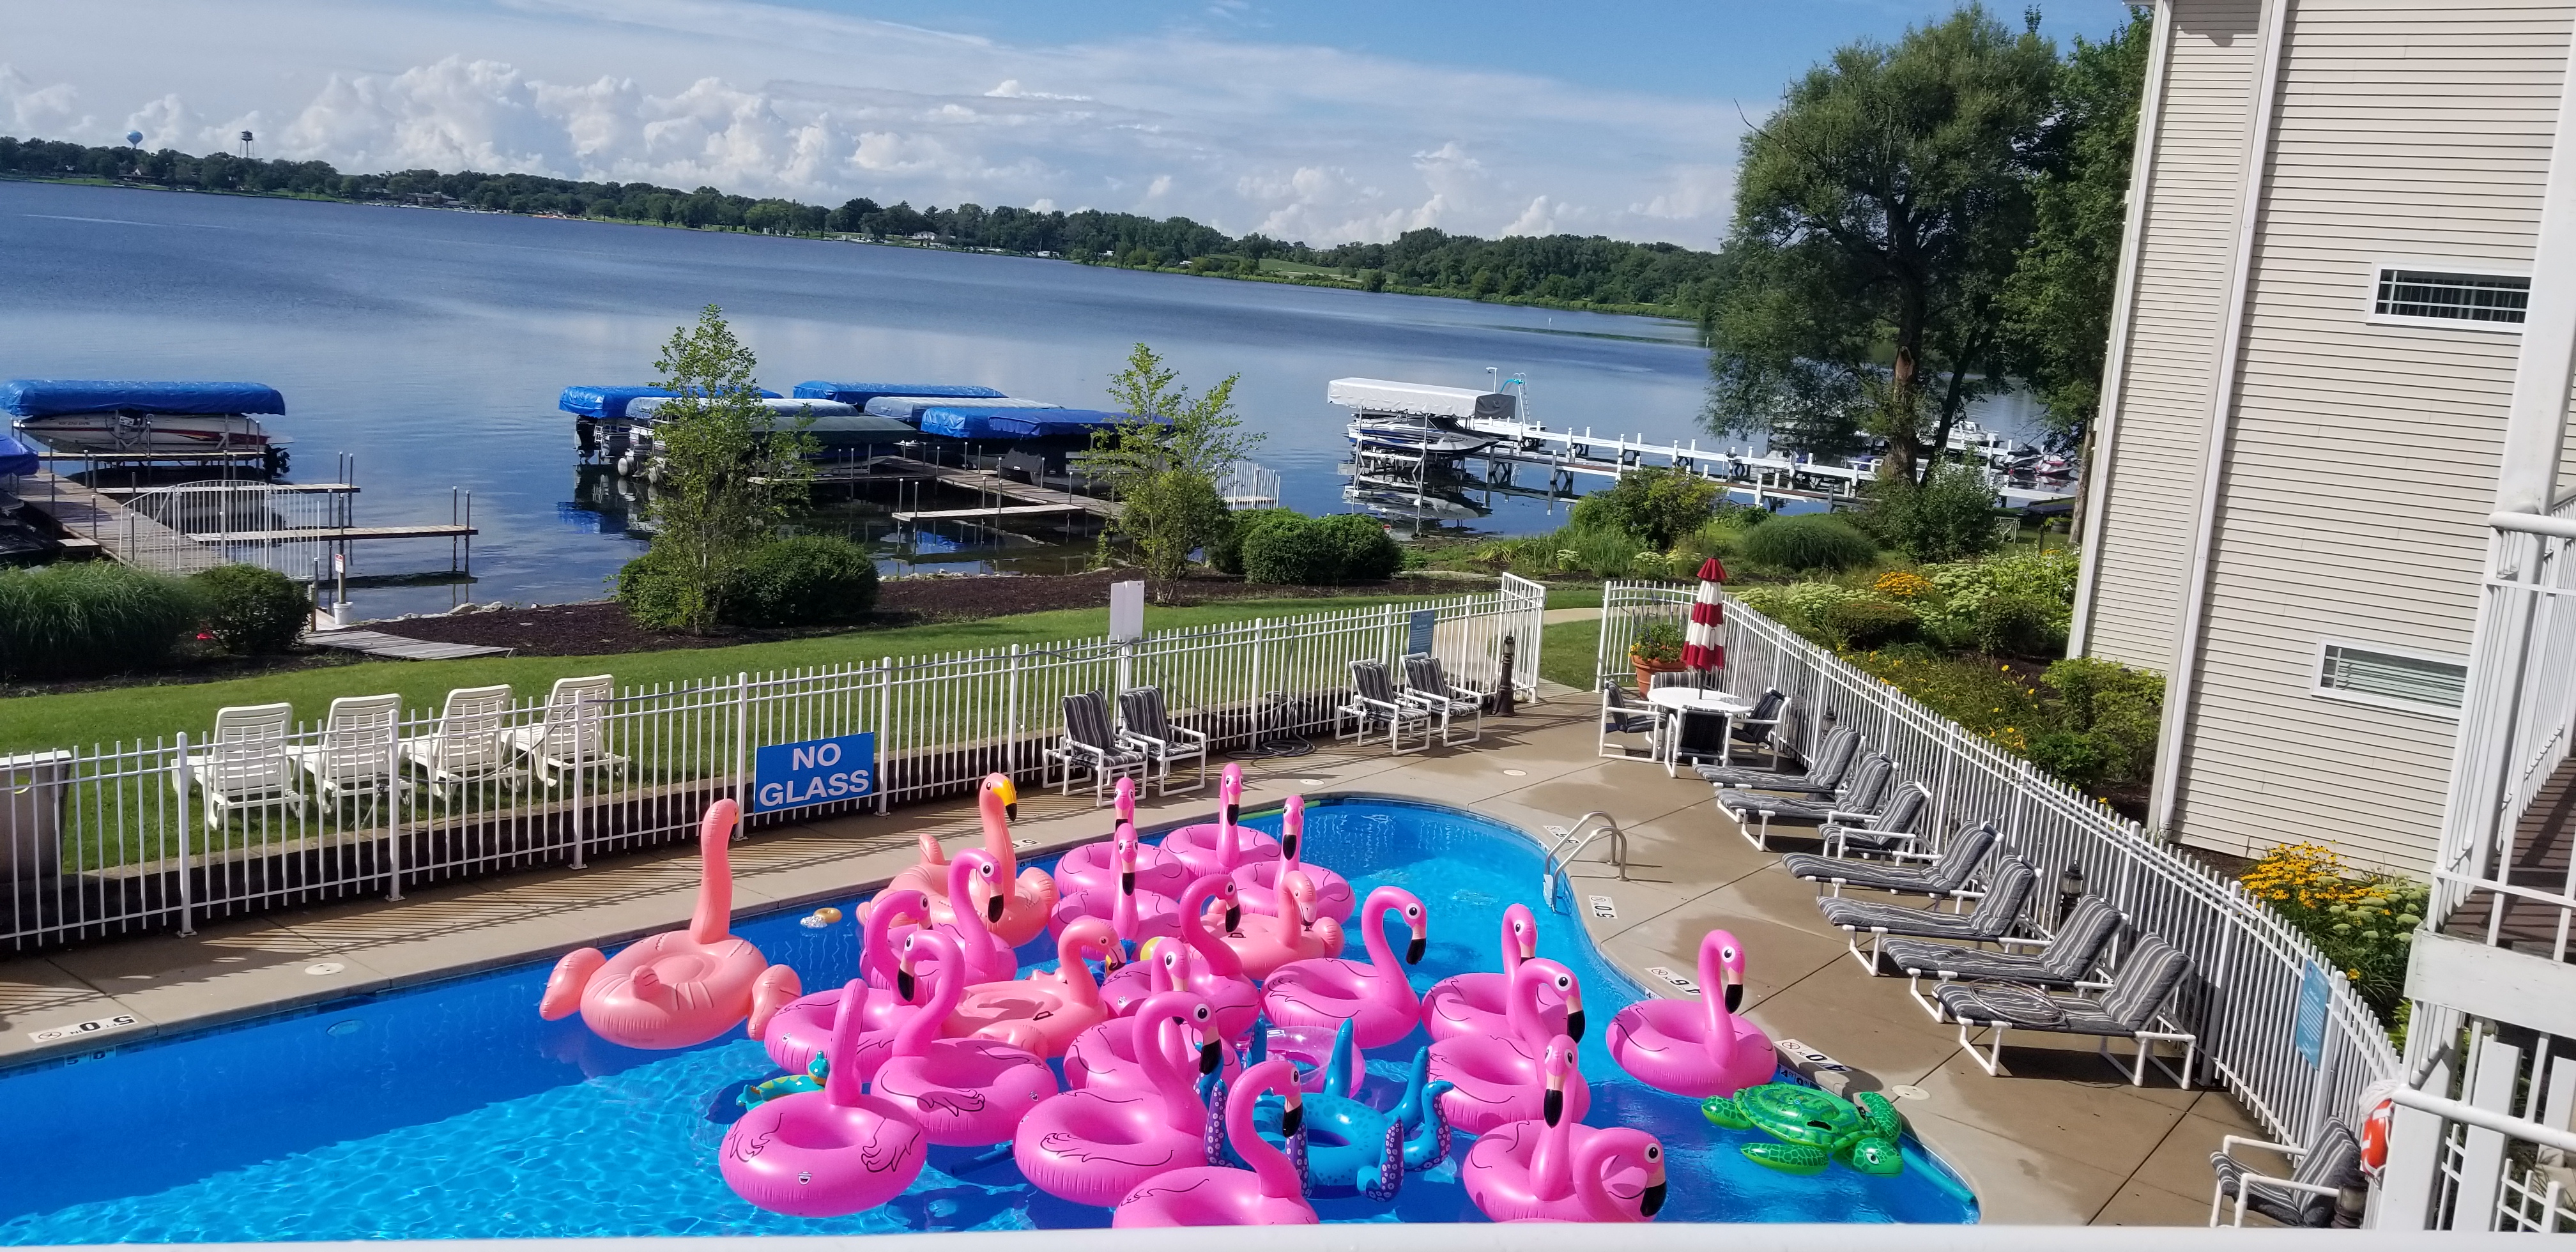 Delavan Lake Resort Pool with Flamingos